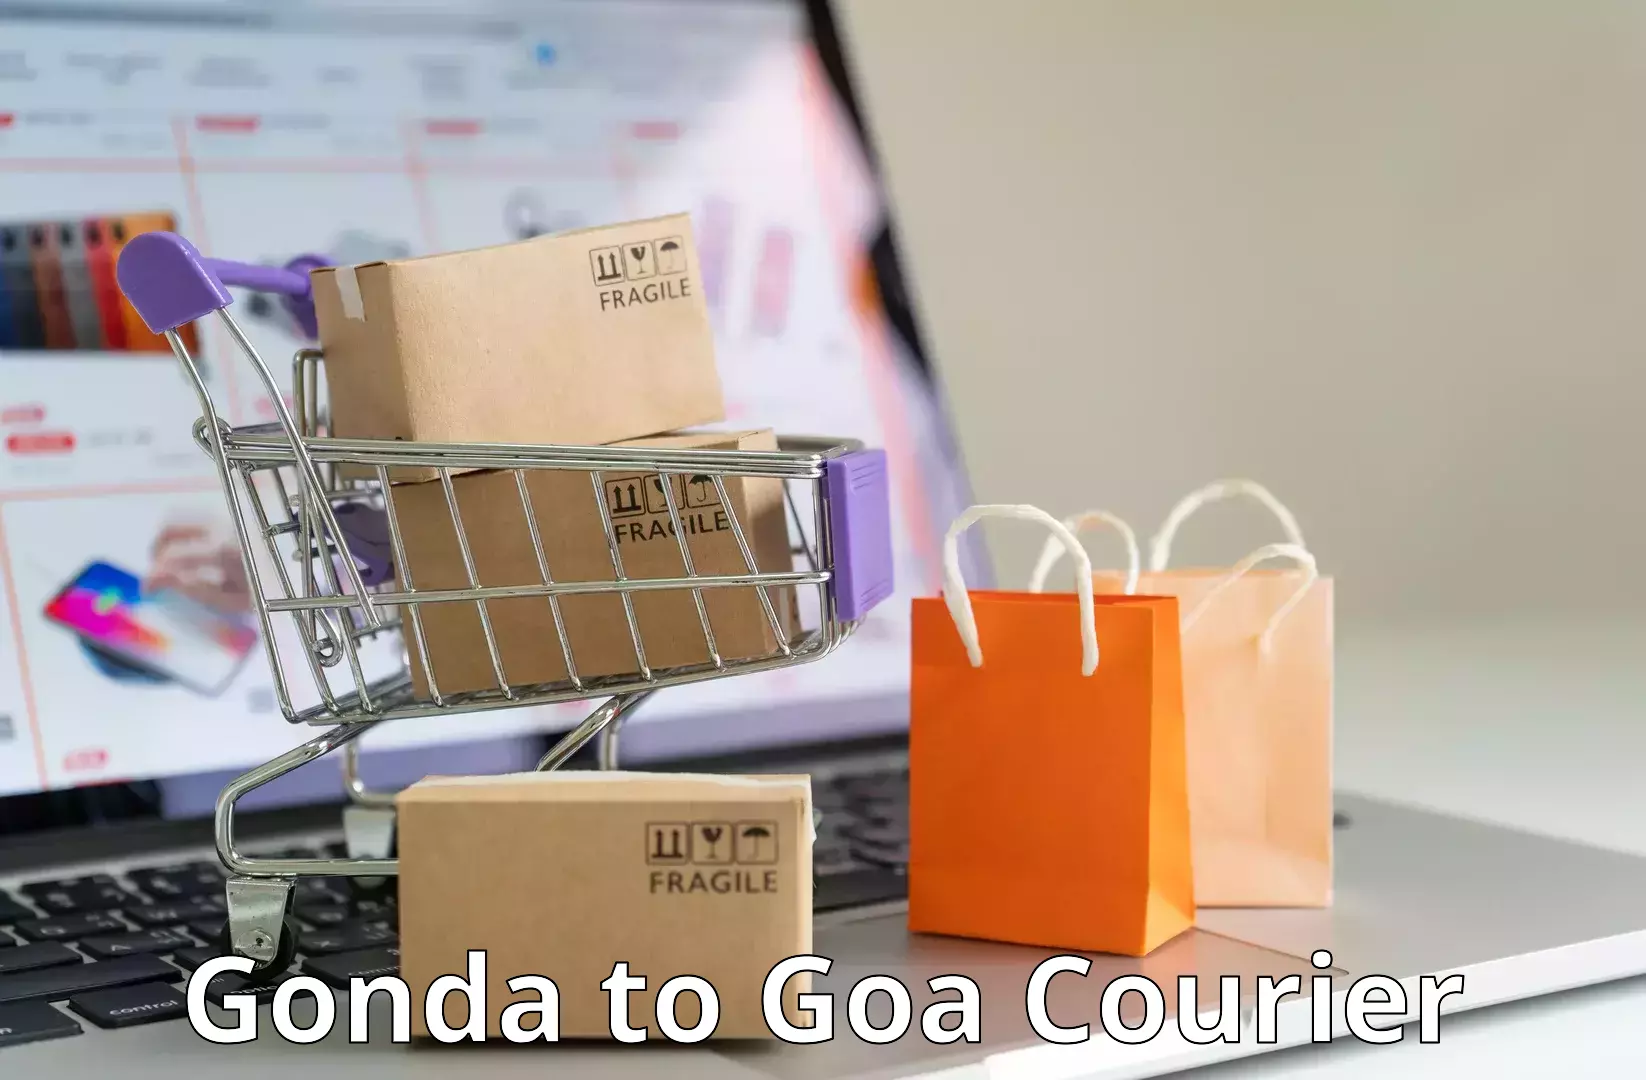 Innovative courier solutions Gonda to Ponda